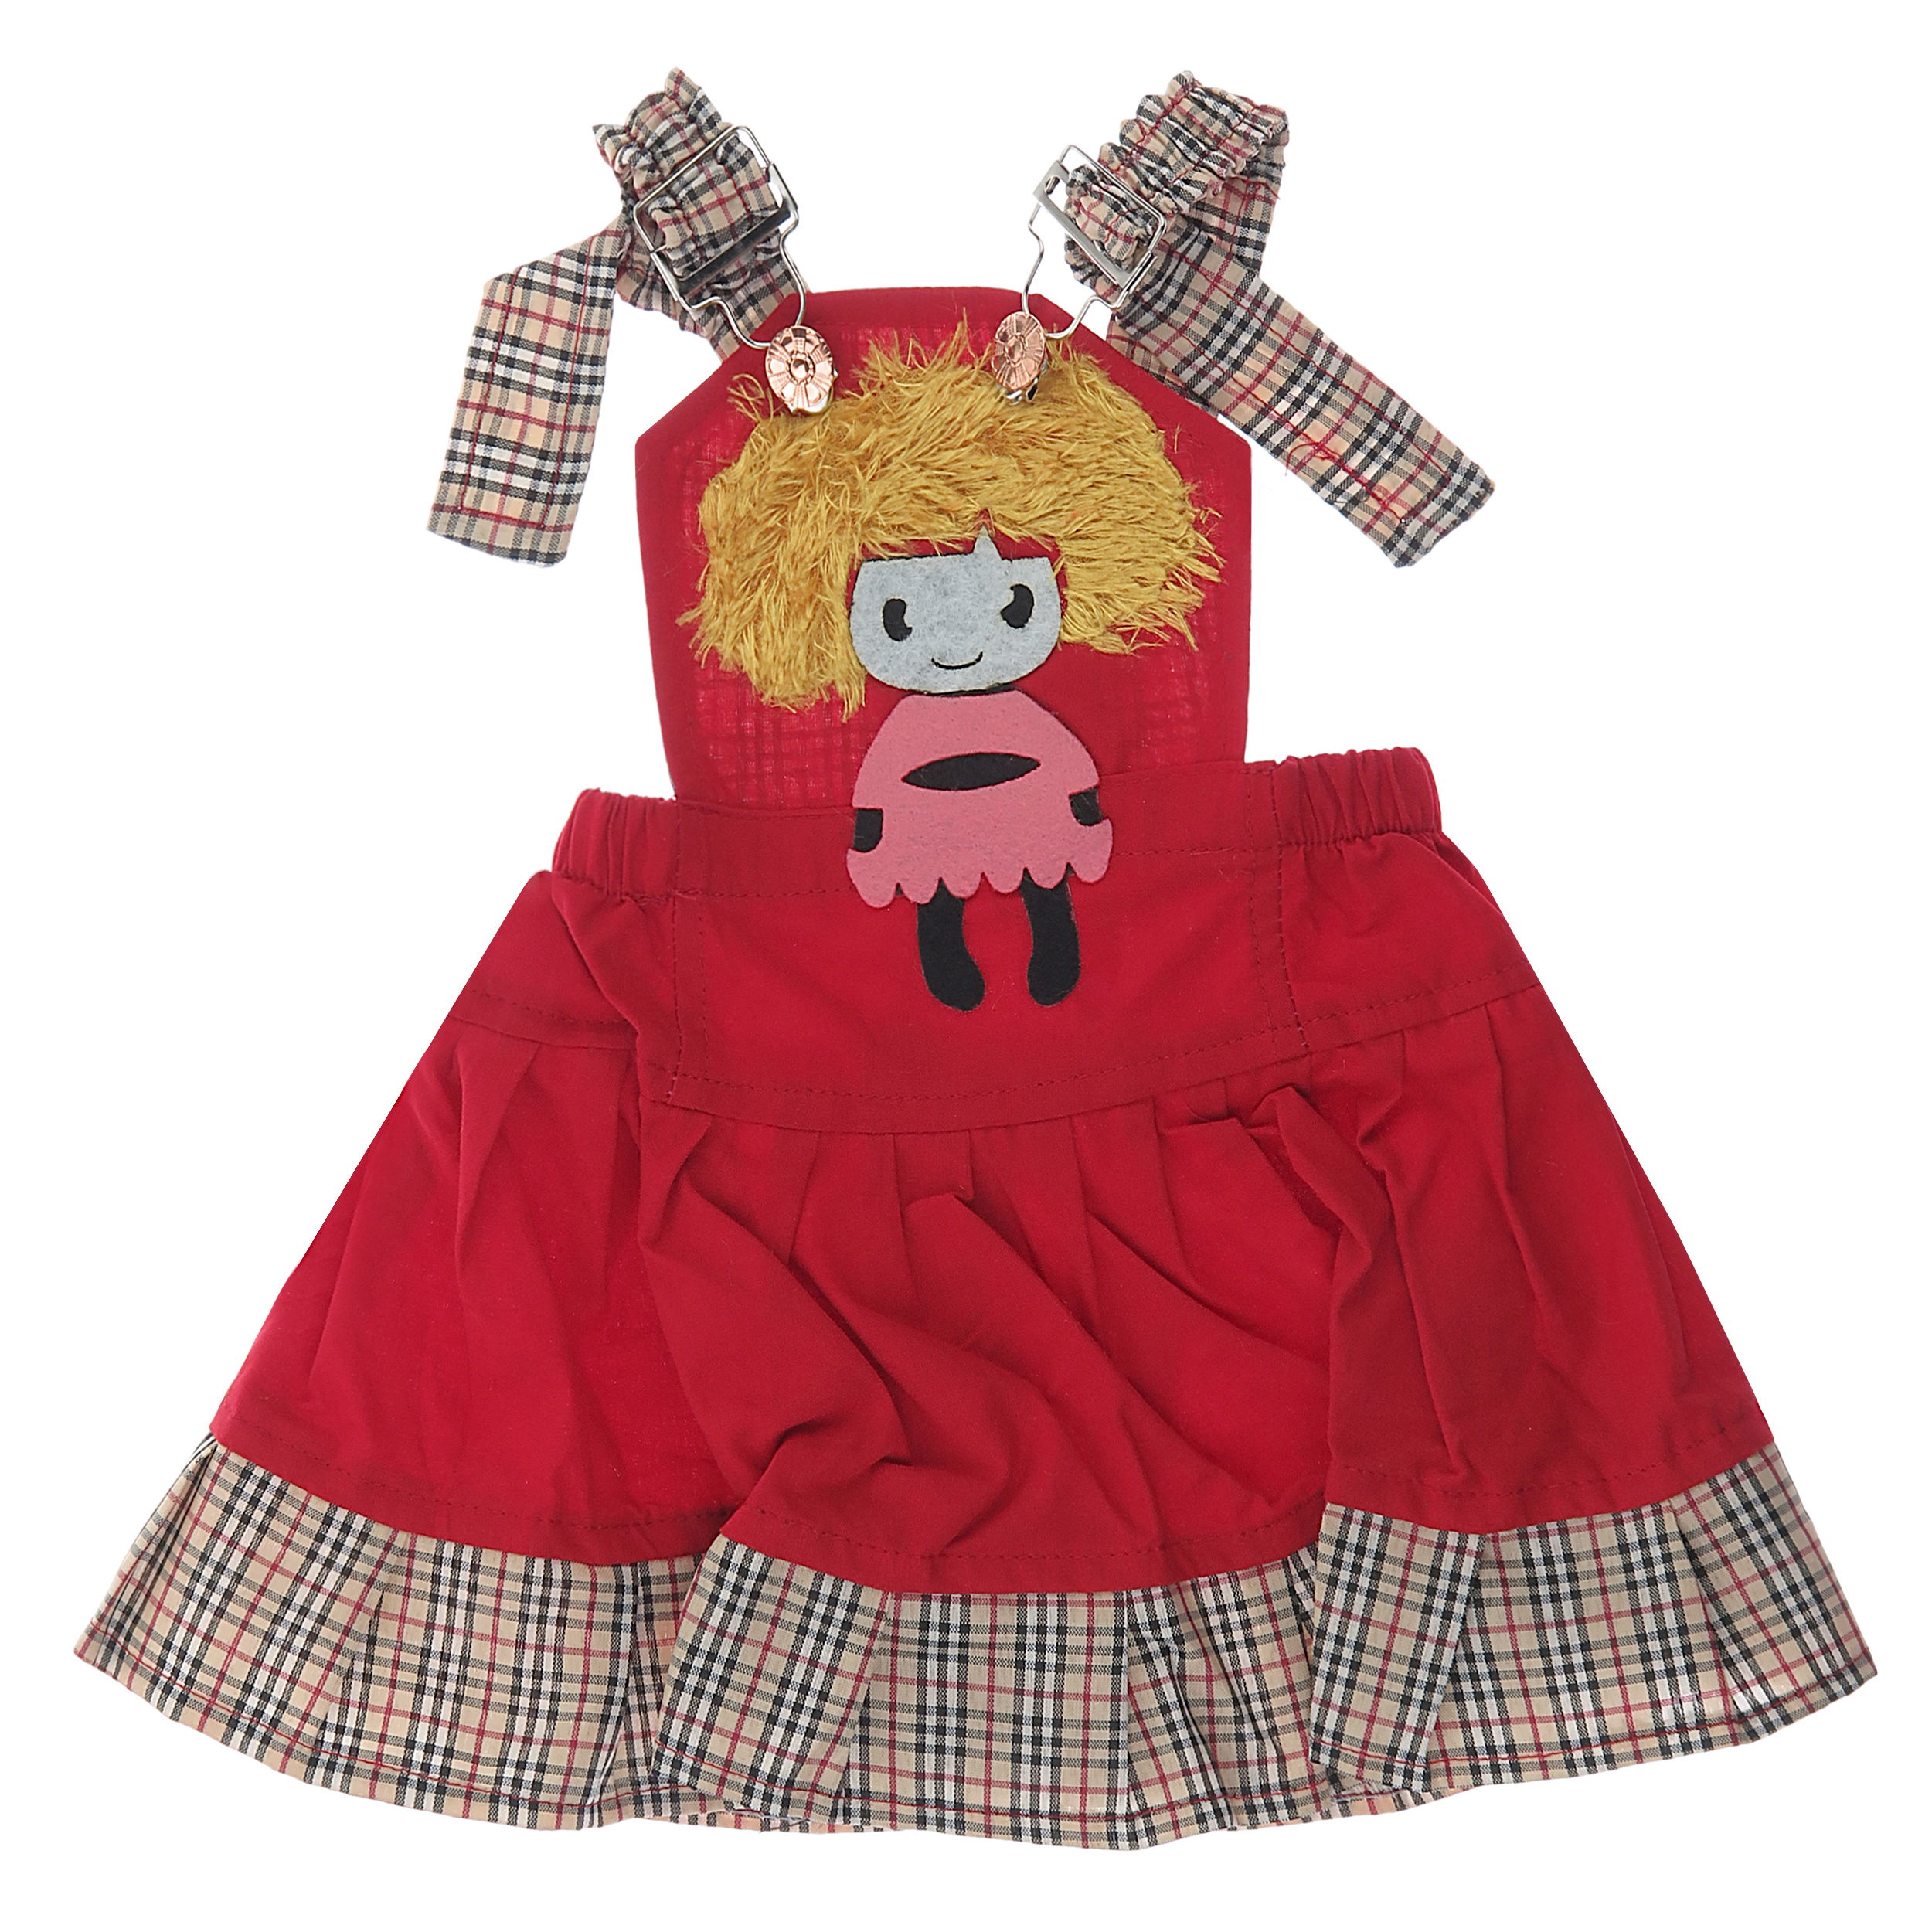 سارافون دخترانه طرح عروسک کد 20 رنگ قرمز